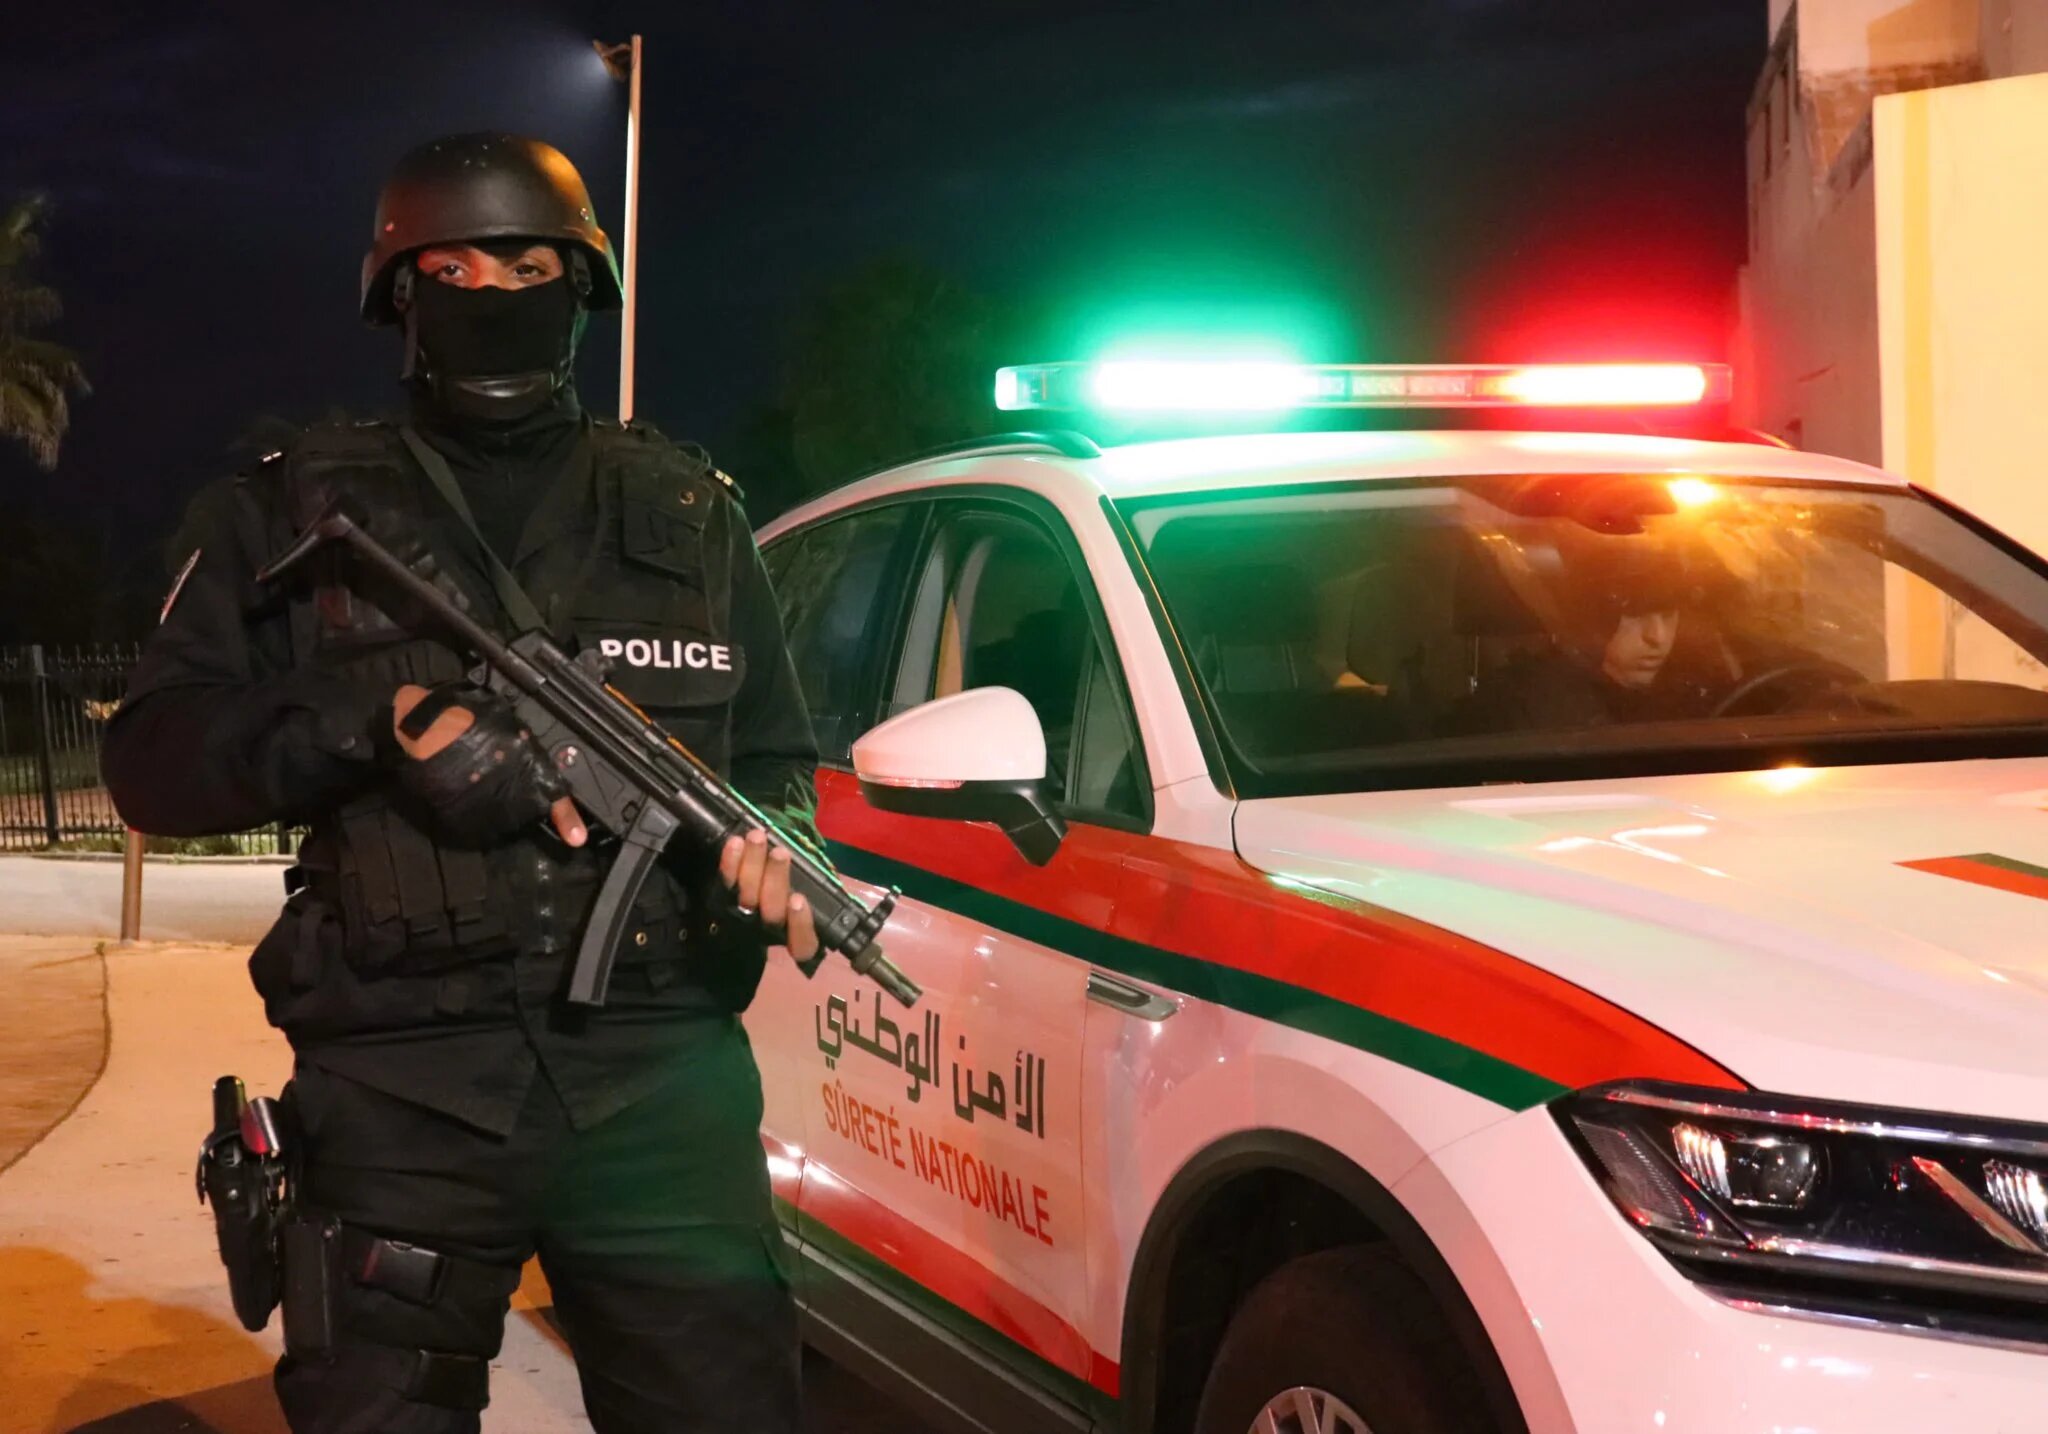 Casablanca : La police judiciaire fait usage d’armes à feu pour contrer les ultras, une enquête est ouverte